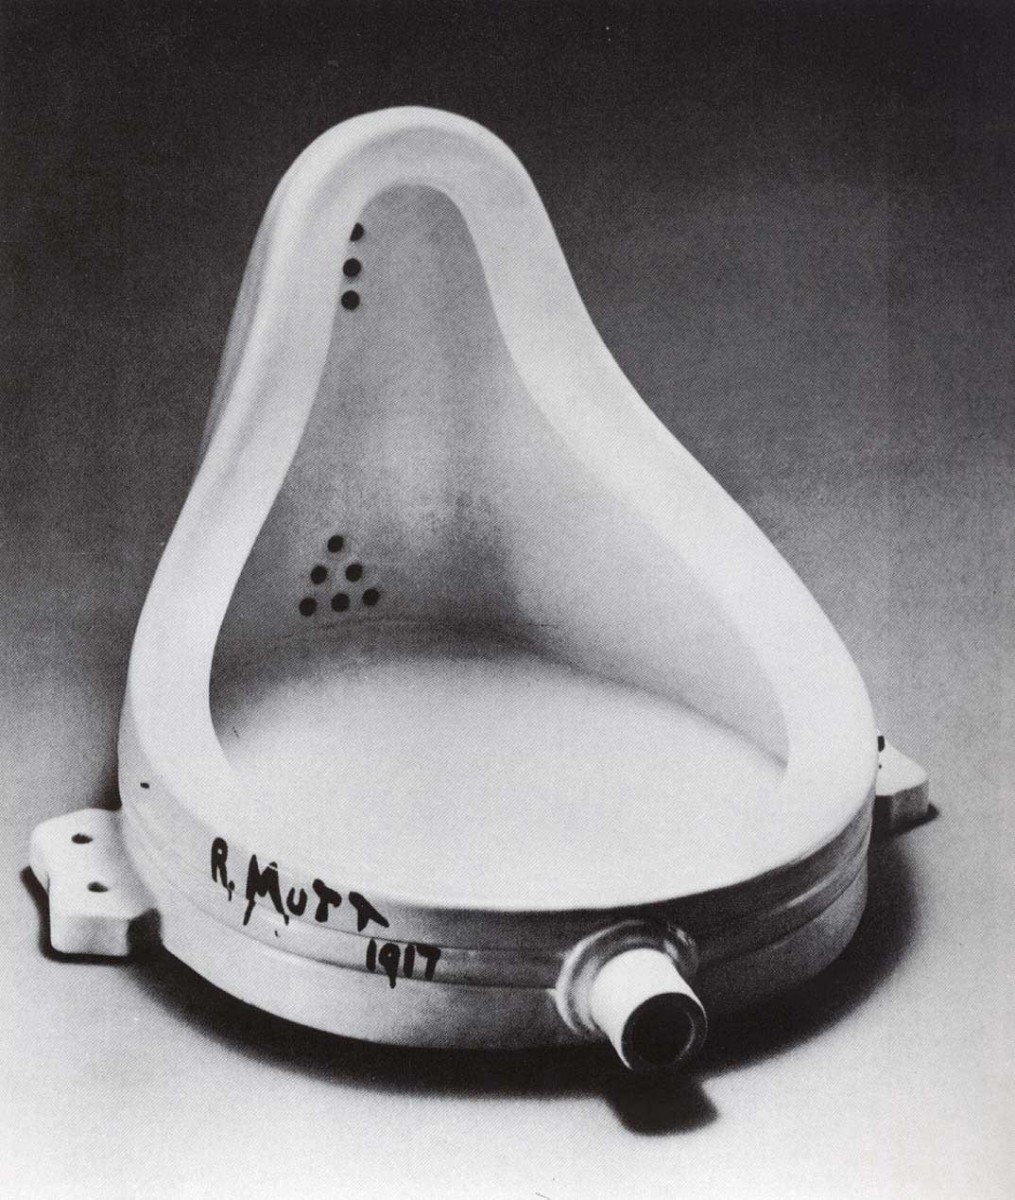 Το γνωστότερο ready-made του Μαρσέλ Ντυσάν, το έργο του «Fountain», ένας ανεστραμμένος ουρητήρας που φέρει την υπογραφή «R. Mutt 1917».